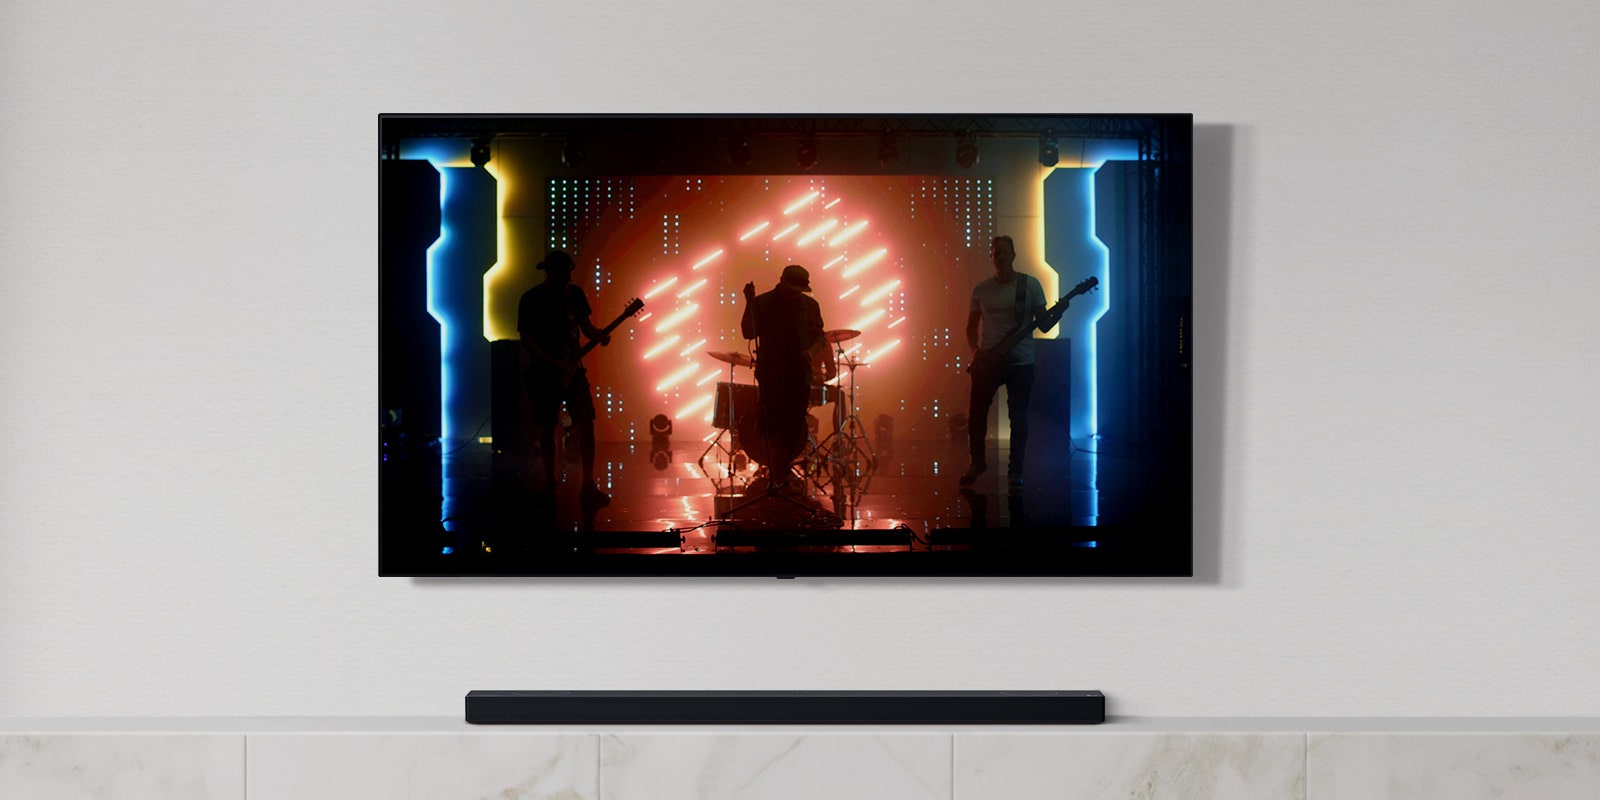 Bílý obývací pokoj s TV a soundbarem. Na TV obrazovce je hudební skupina, hudebníci hrají na nástroje a zpívají. (přehrát video)